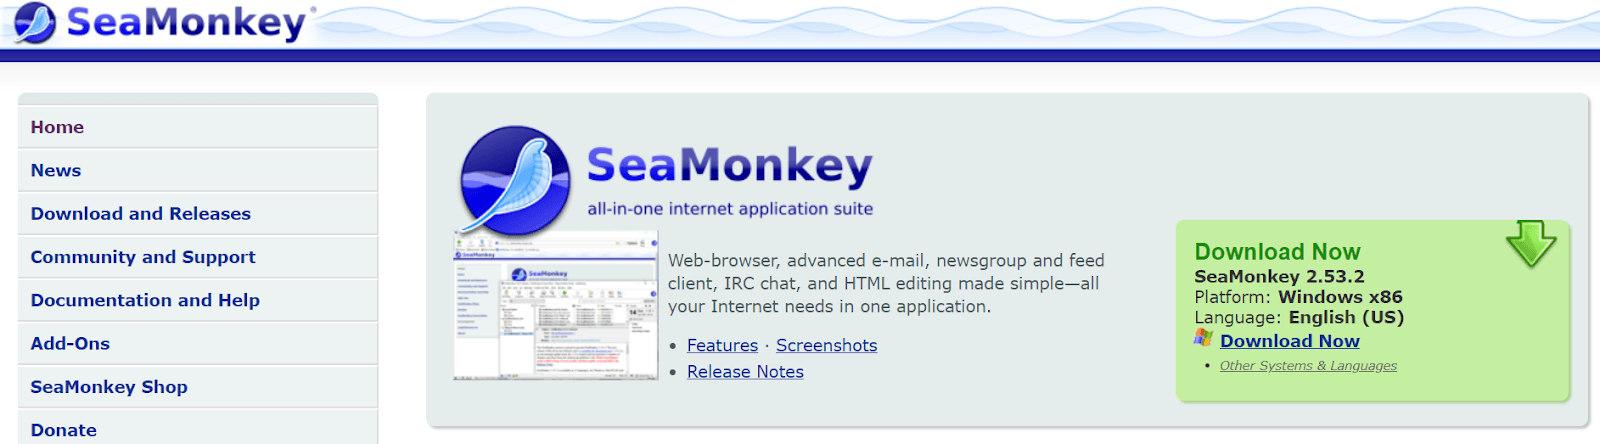 SeaMonkey - Windows için Hafif Tarayıcı 